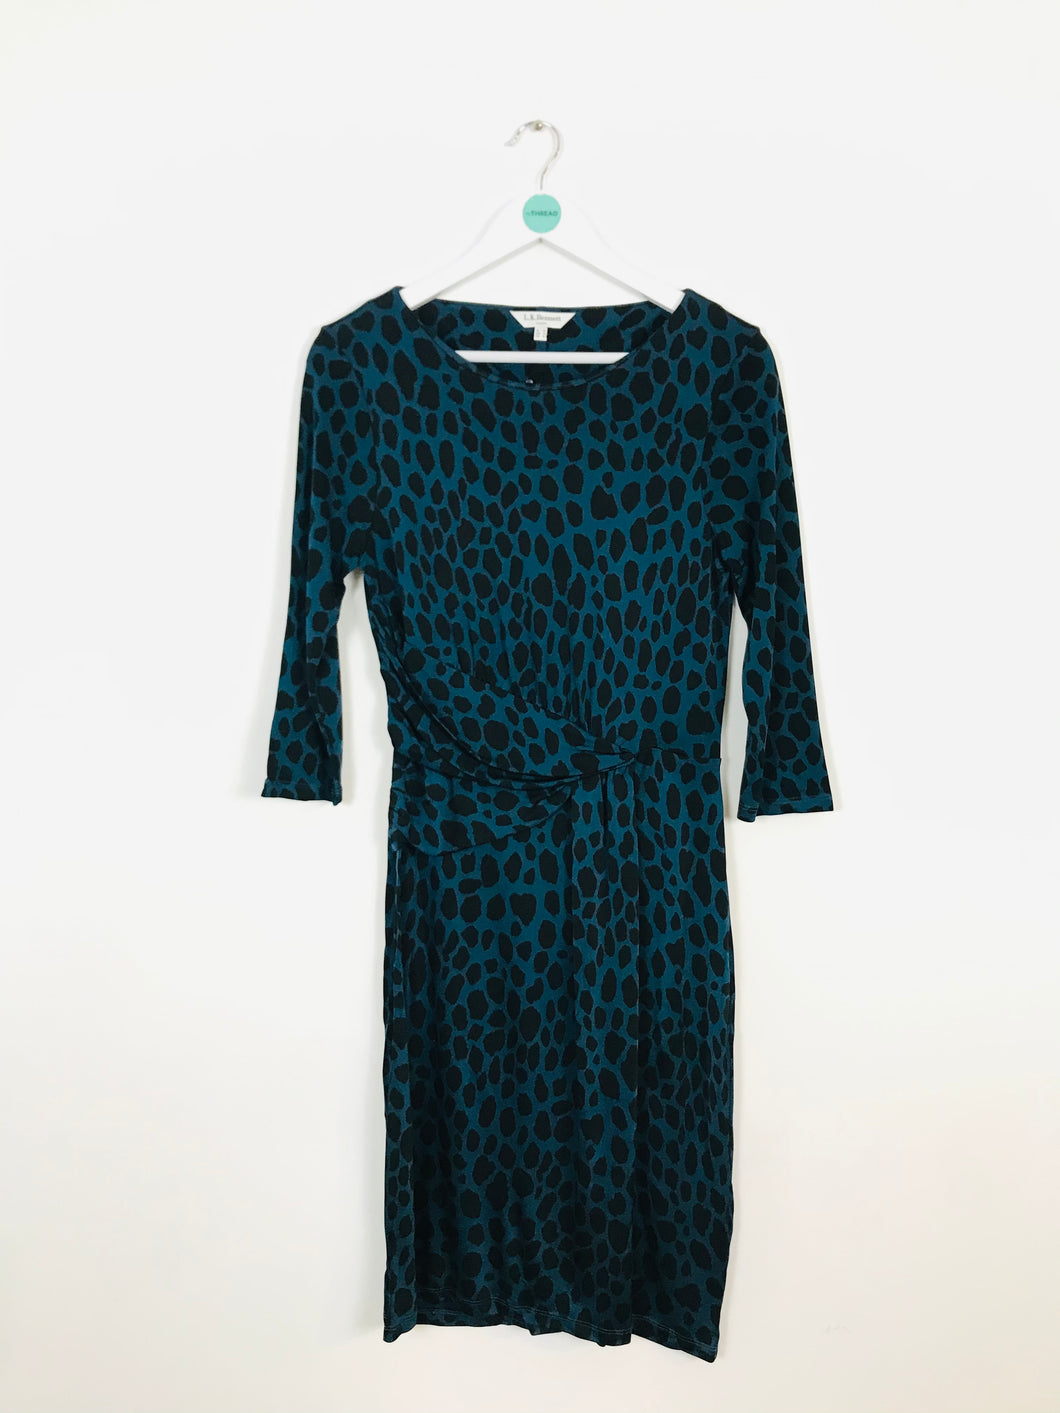 L.K. Bennett Women’s Fitted Animal Print Dress | UK 14 | Blue and Black